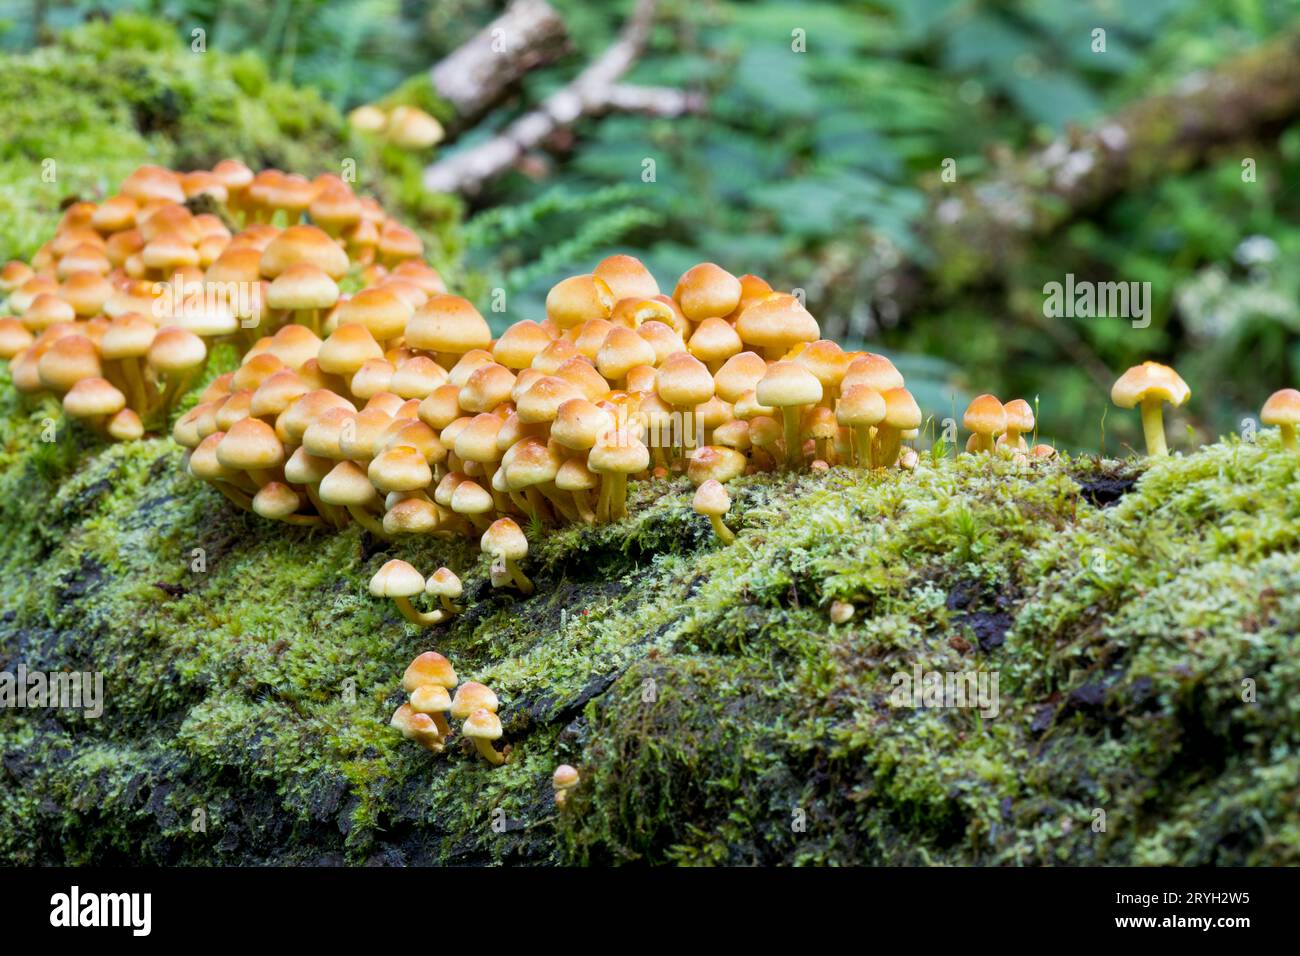 Schwefeltuftpilzmasse (Hypholoma fasciculare) von Fruchtkörpern, die am Stamm einer umgestürzten Eiche wachsen. Powys, Wales. August. Stockfoto